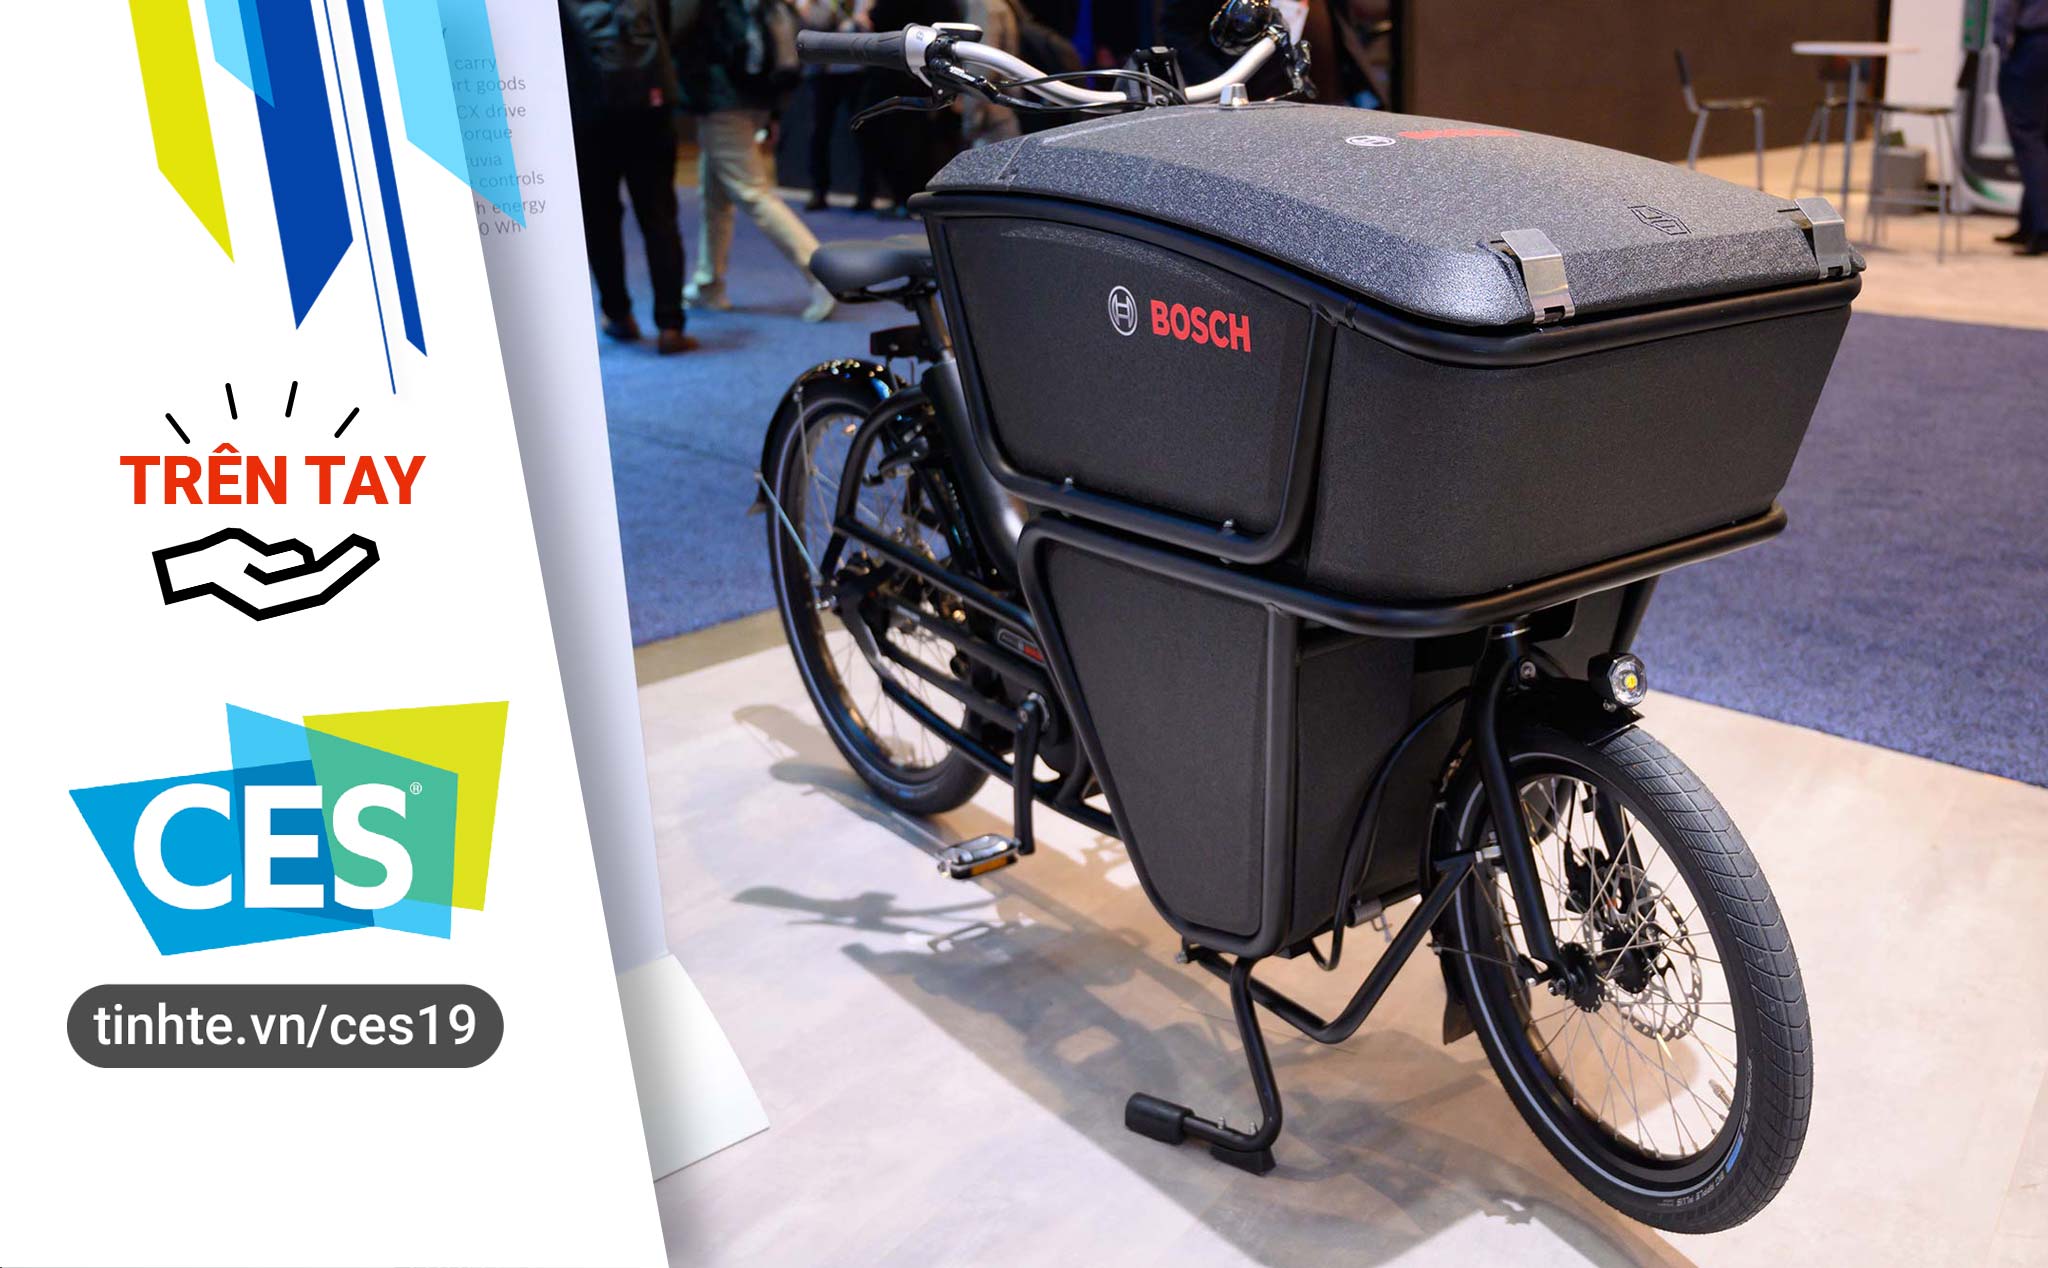 #CES19: Trên tay xe đạp điện Bosch dành cho anh em shipper